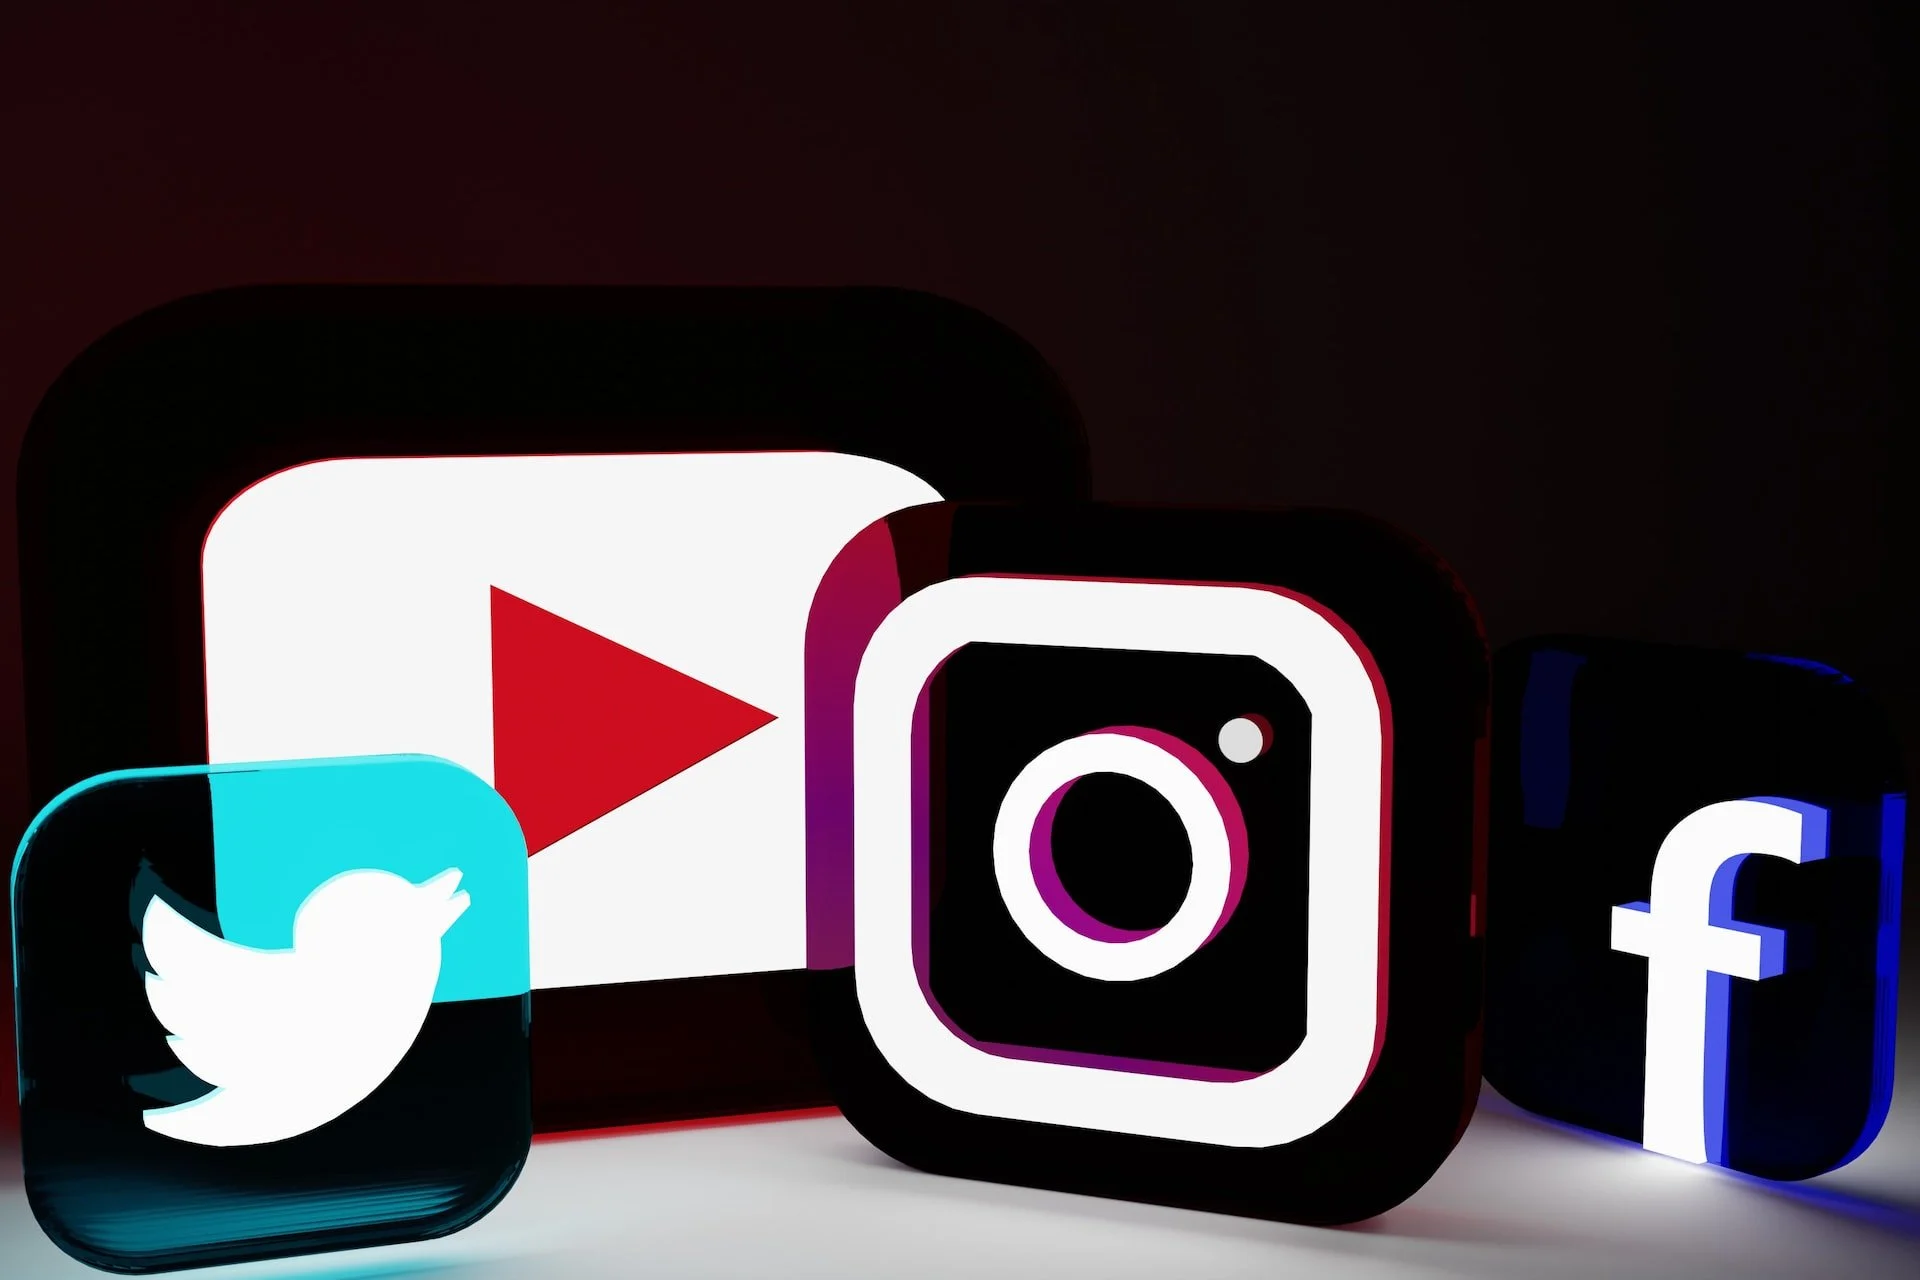 платформы социальных сетей Twitter, YouTube, Instagram и прозрачные логотипы Facebook с неоновой подсветкой